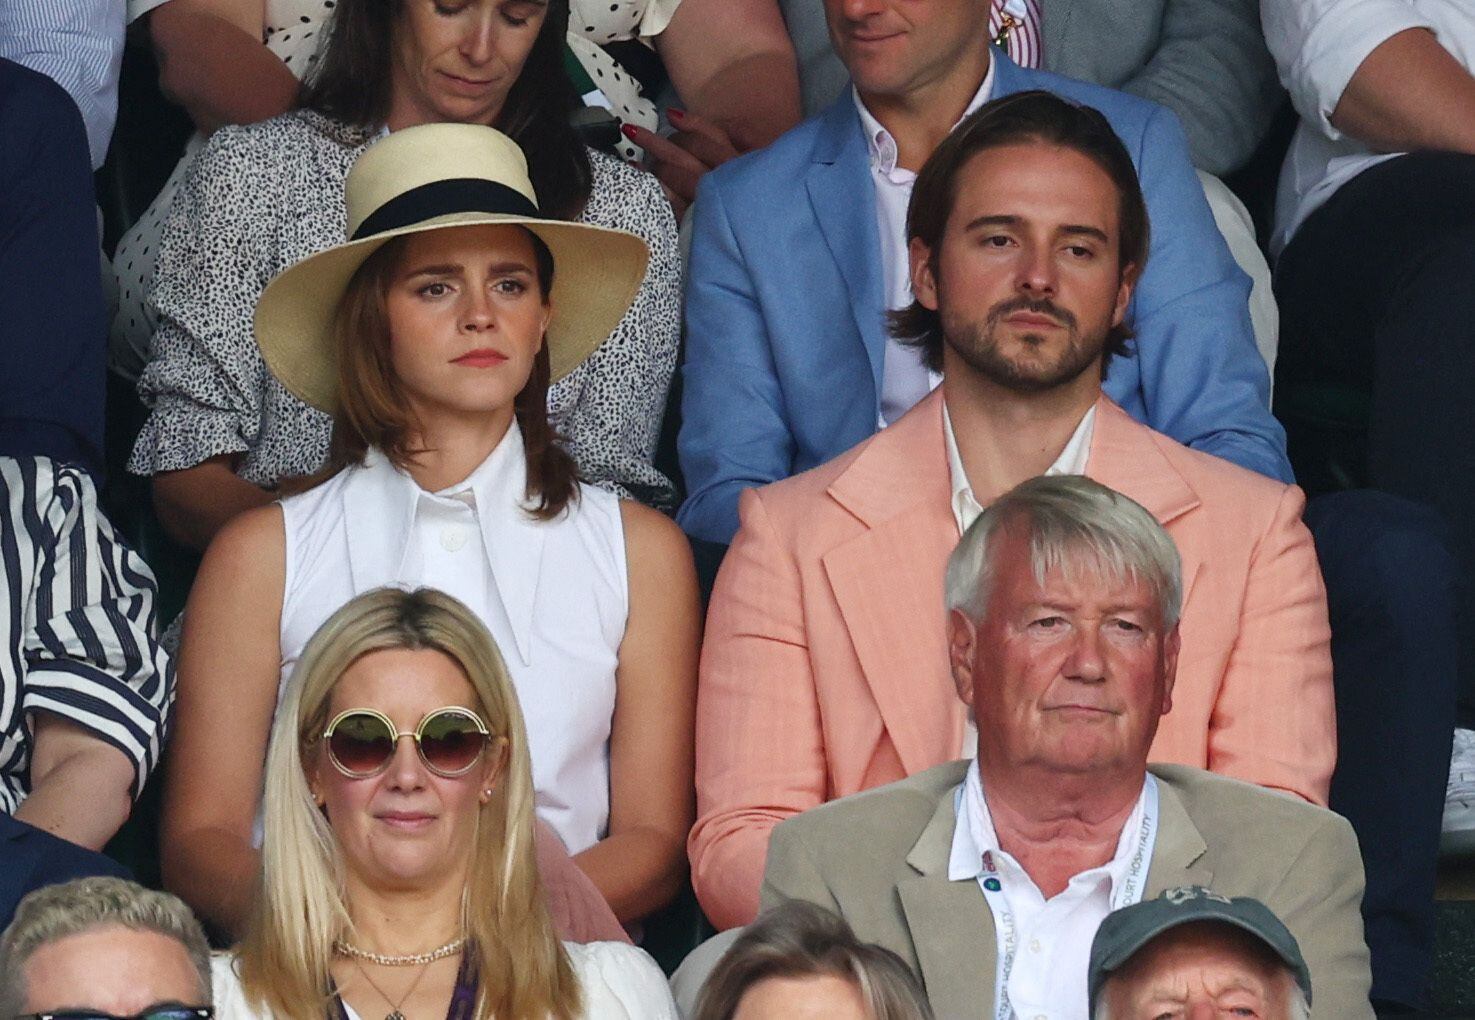 Siguiendo con el desfile de estrellas, Emma Watson se dejó ver en la pista con su hermano Alex Watson. La actriz también acudió a la final femenina que se celebró el día anterior en el mismo lugar. En esa ocasión, estuvo acompañada del cantante Lewis Capaldi. 